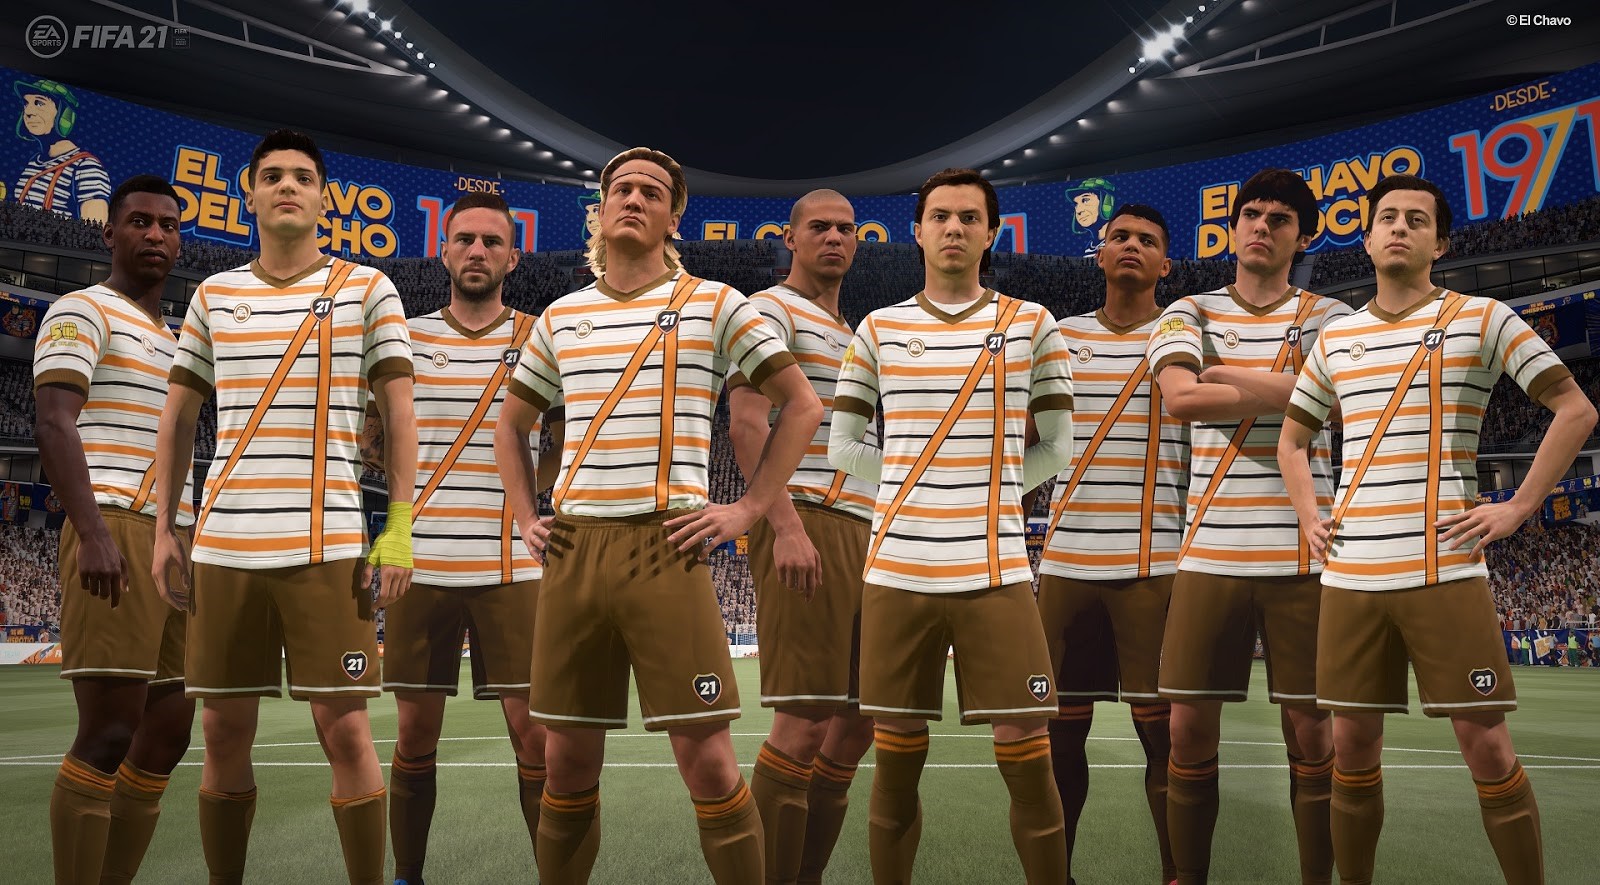 El Chavo del 8 y Quico estarán representados en EA SPORTS FIFA 21 con sus uniformes y diversos elementos del estadio como banderas, tifos y vallas.